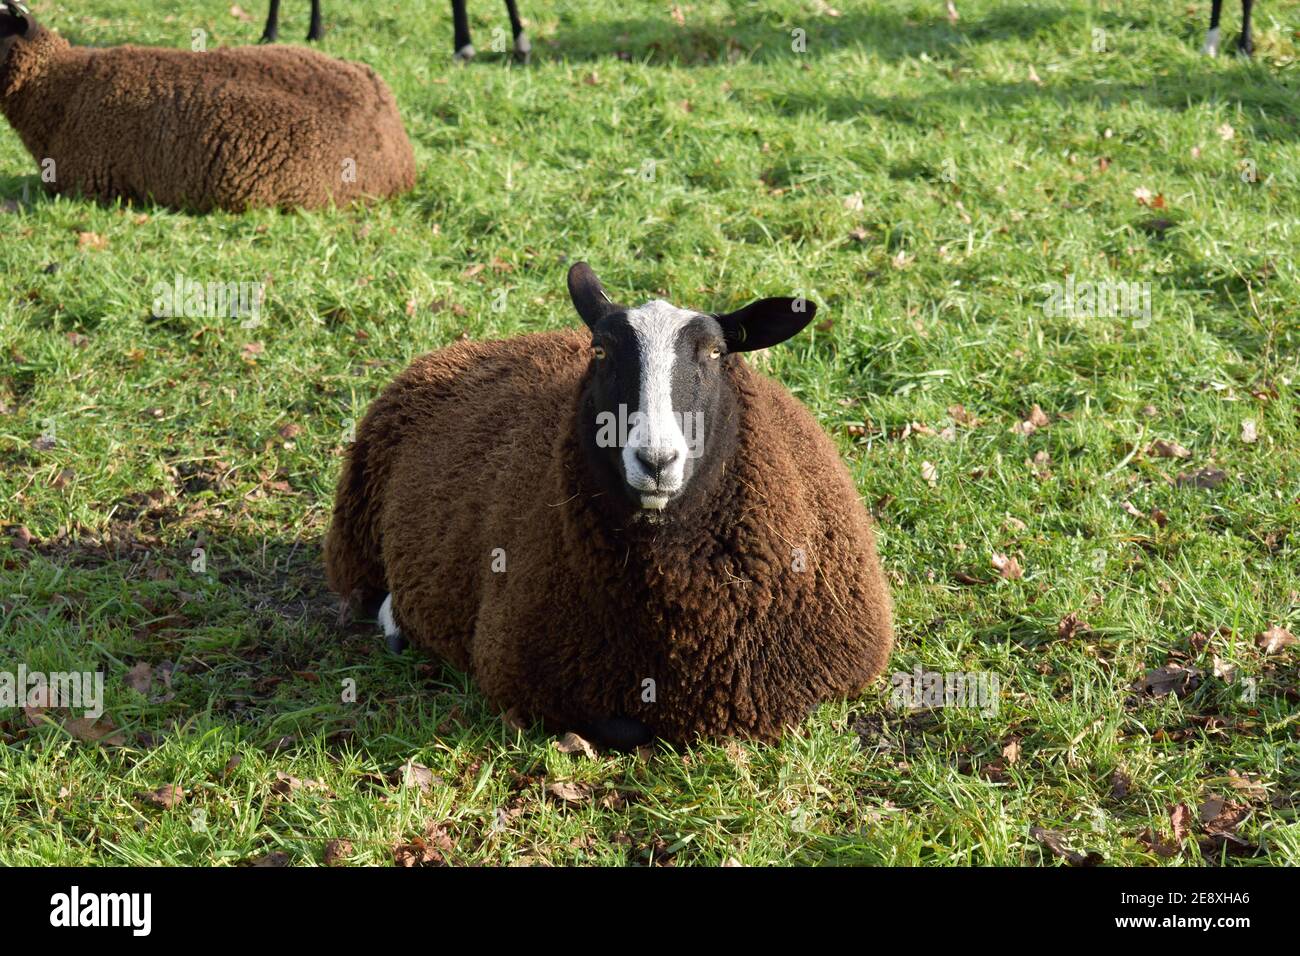 Un gros mouton marron et laineux se détendant dans un champ et regardant curieusement la caméra Banque D'Images